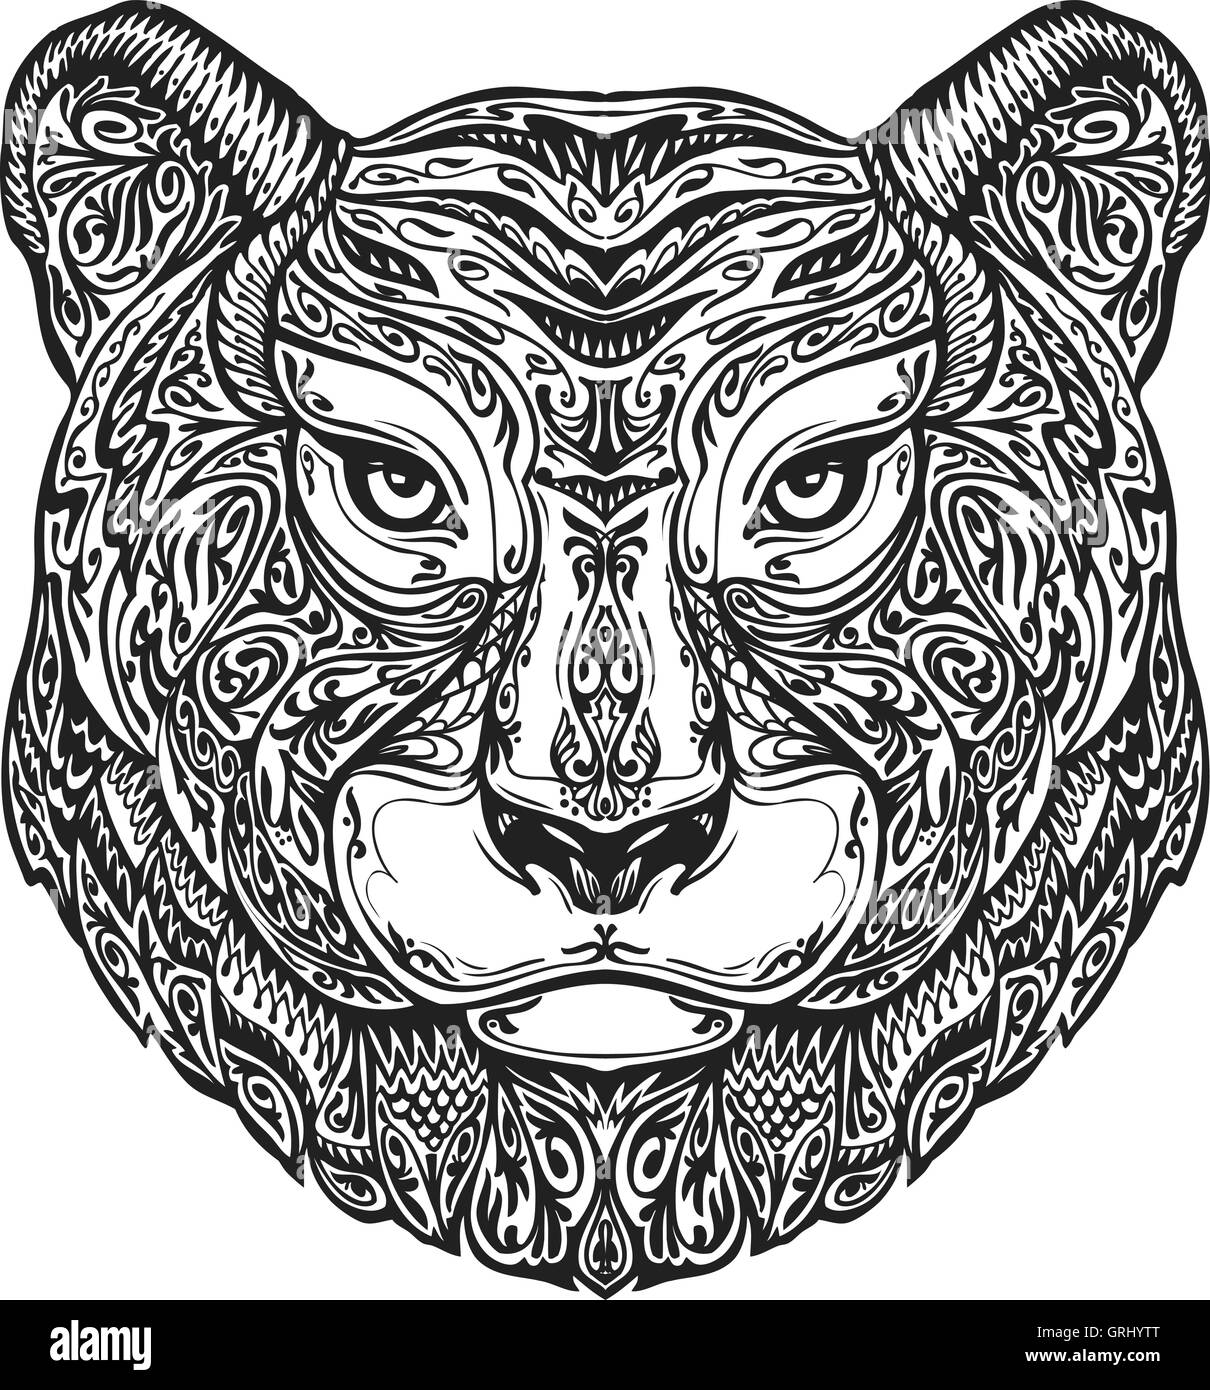 Panthère tigre tigre Banque d'images noir et blanc - Alamy